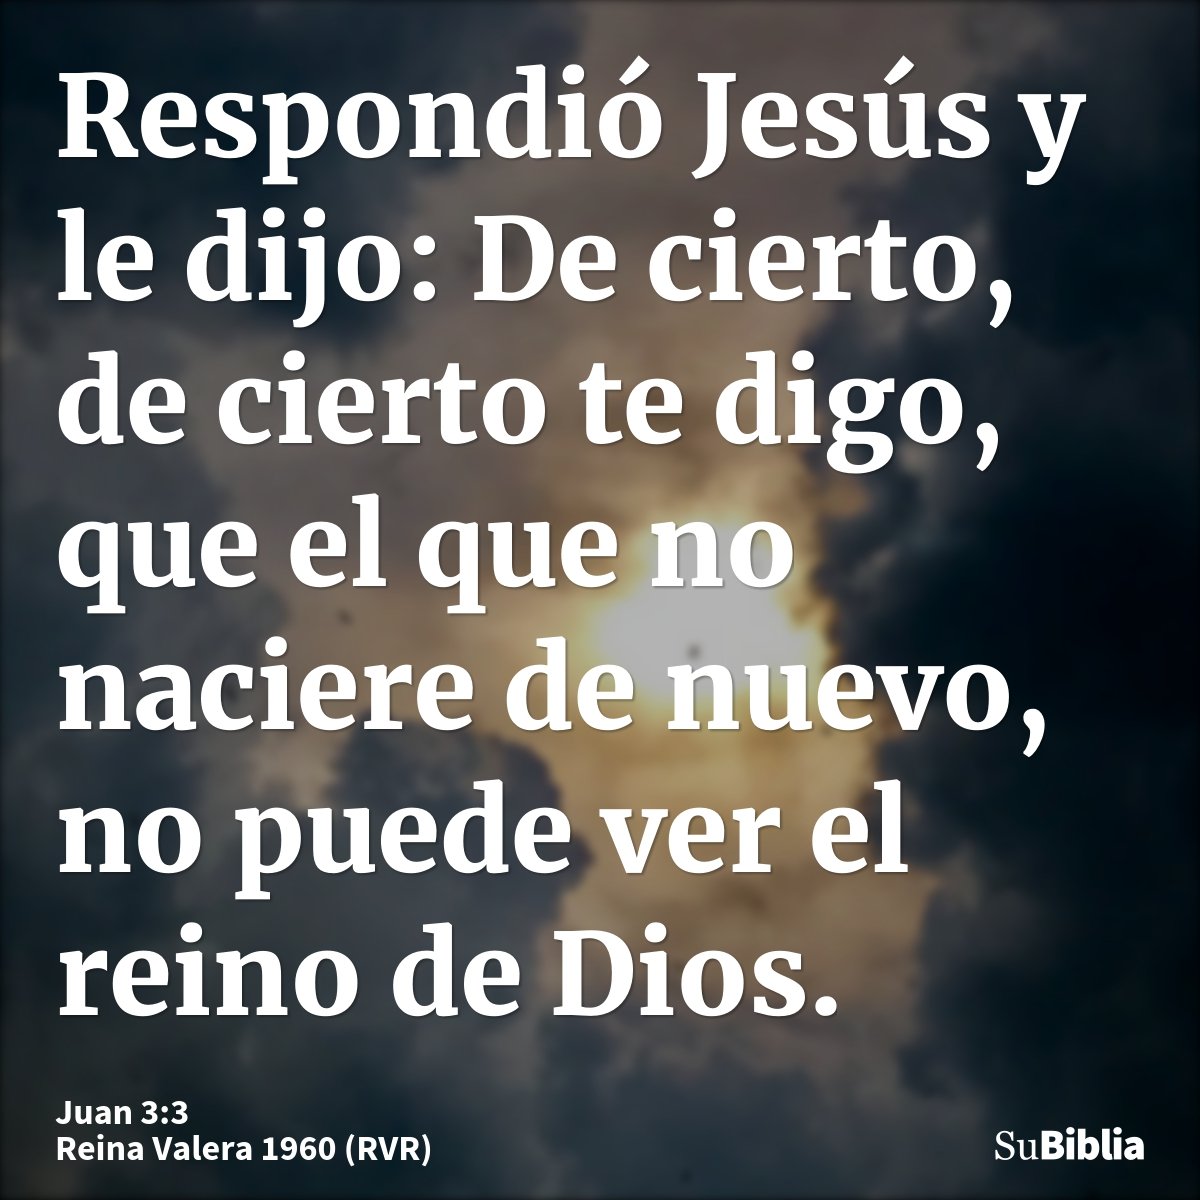 Respondió Jesús y le dijo: De cierto, de cierto te digo, que el que no naciere de nuevo, no puede ver el reino de Dios.